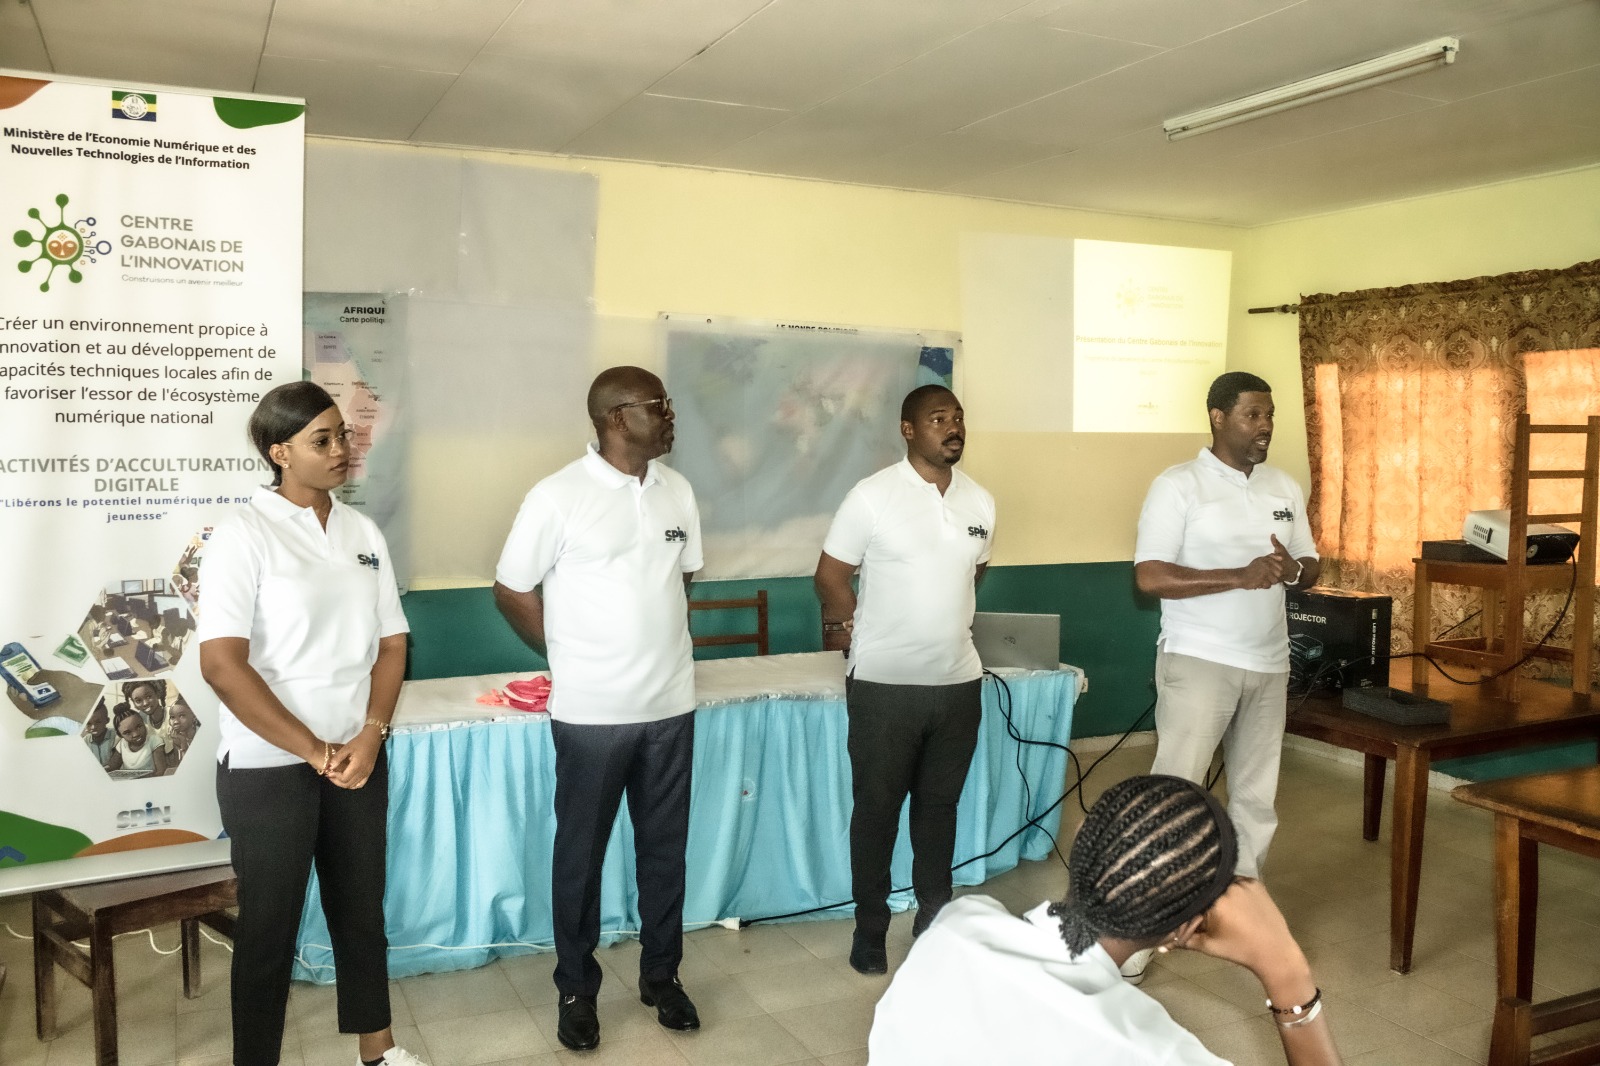 Présentation  des activités d’ACCULTURATION DIGITALE du Centre Gabonais de L’Innovation  au   Lycée Paul Indjedjet Gondjout